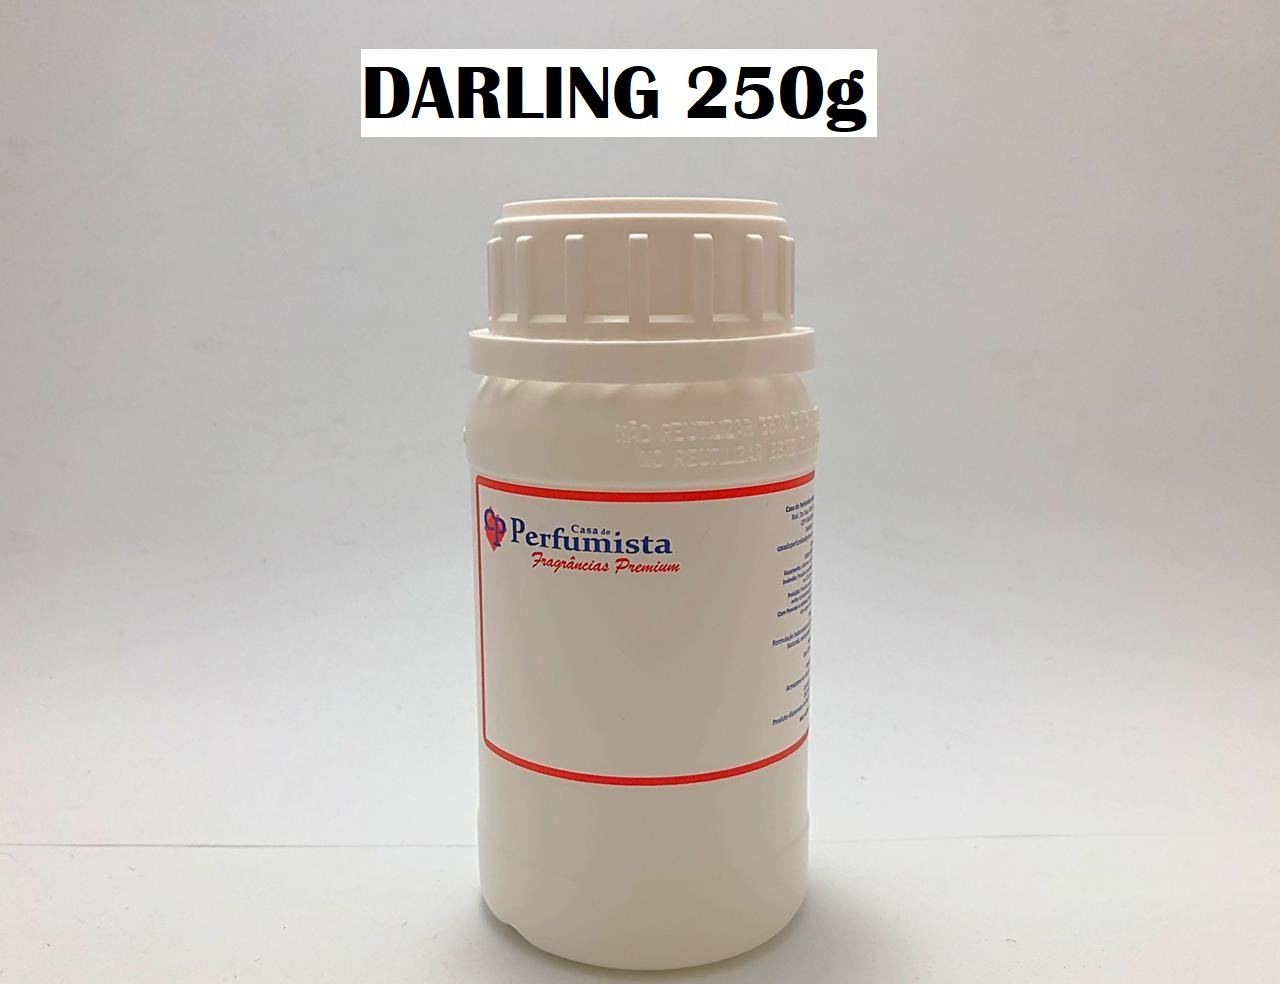 DARLING - 250g